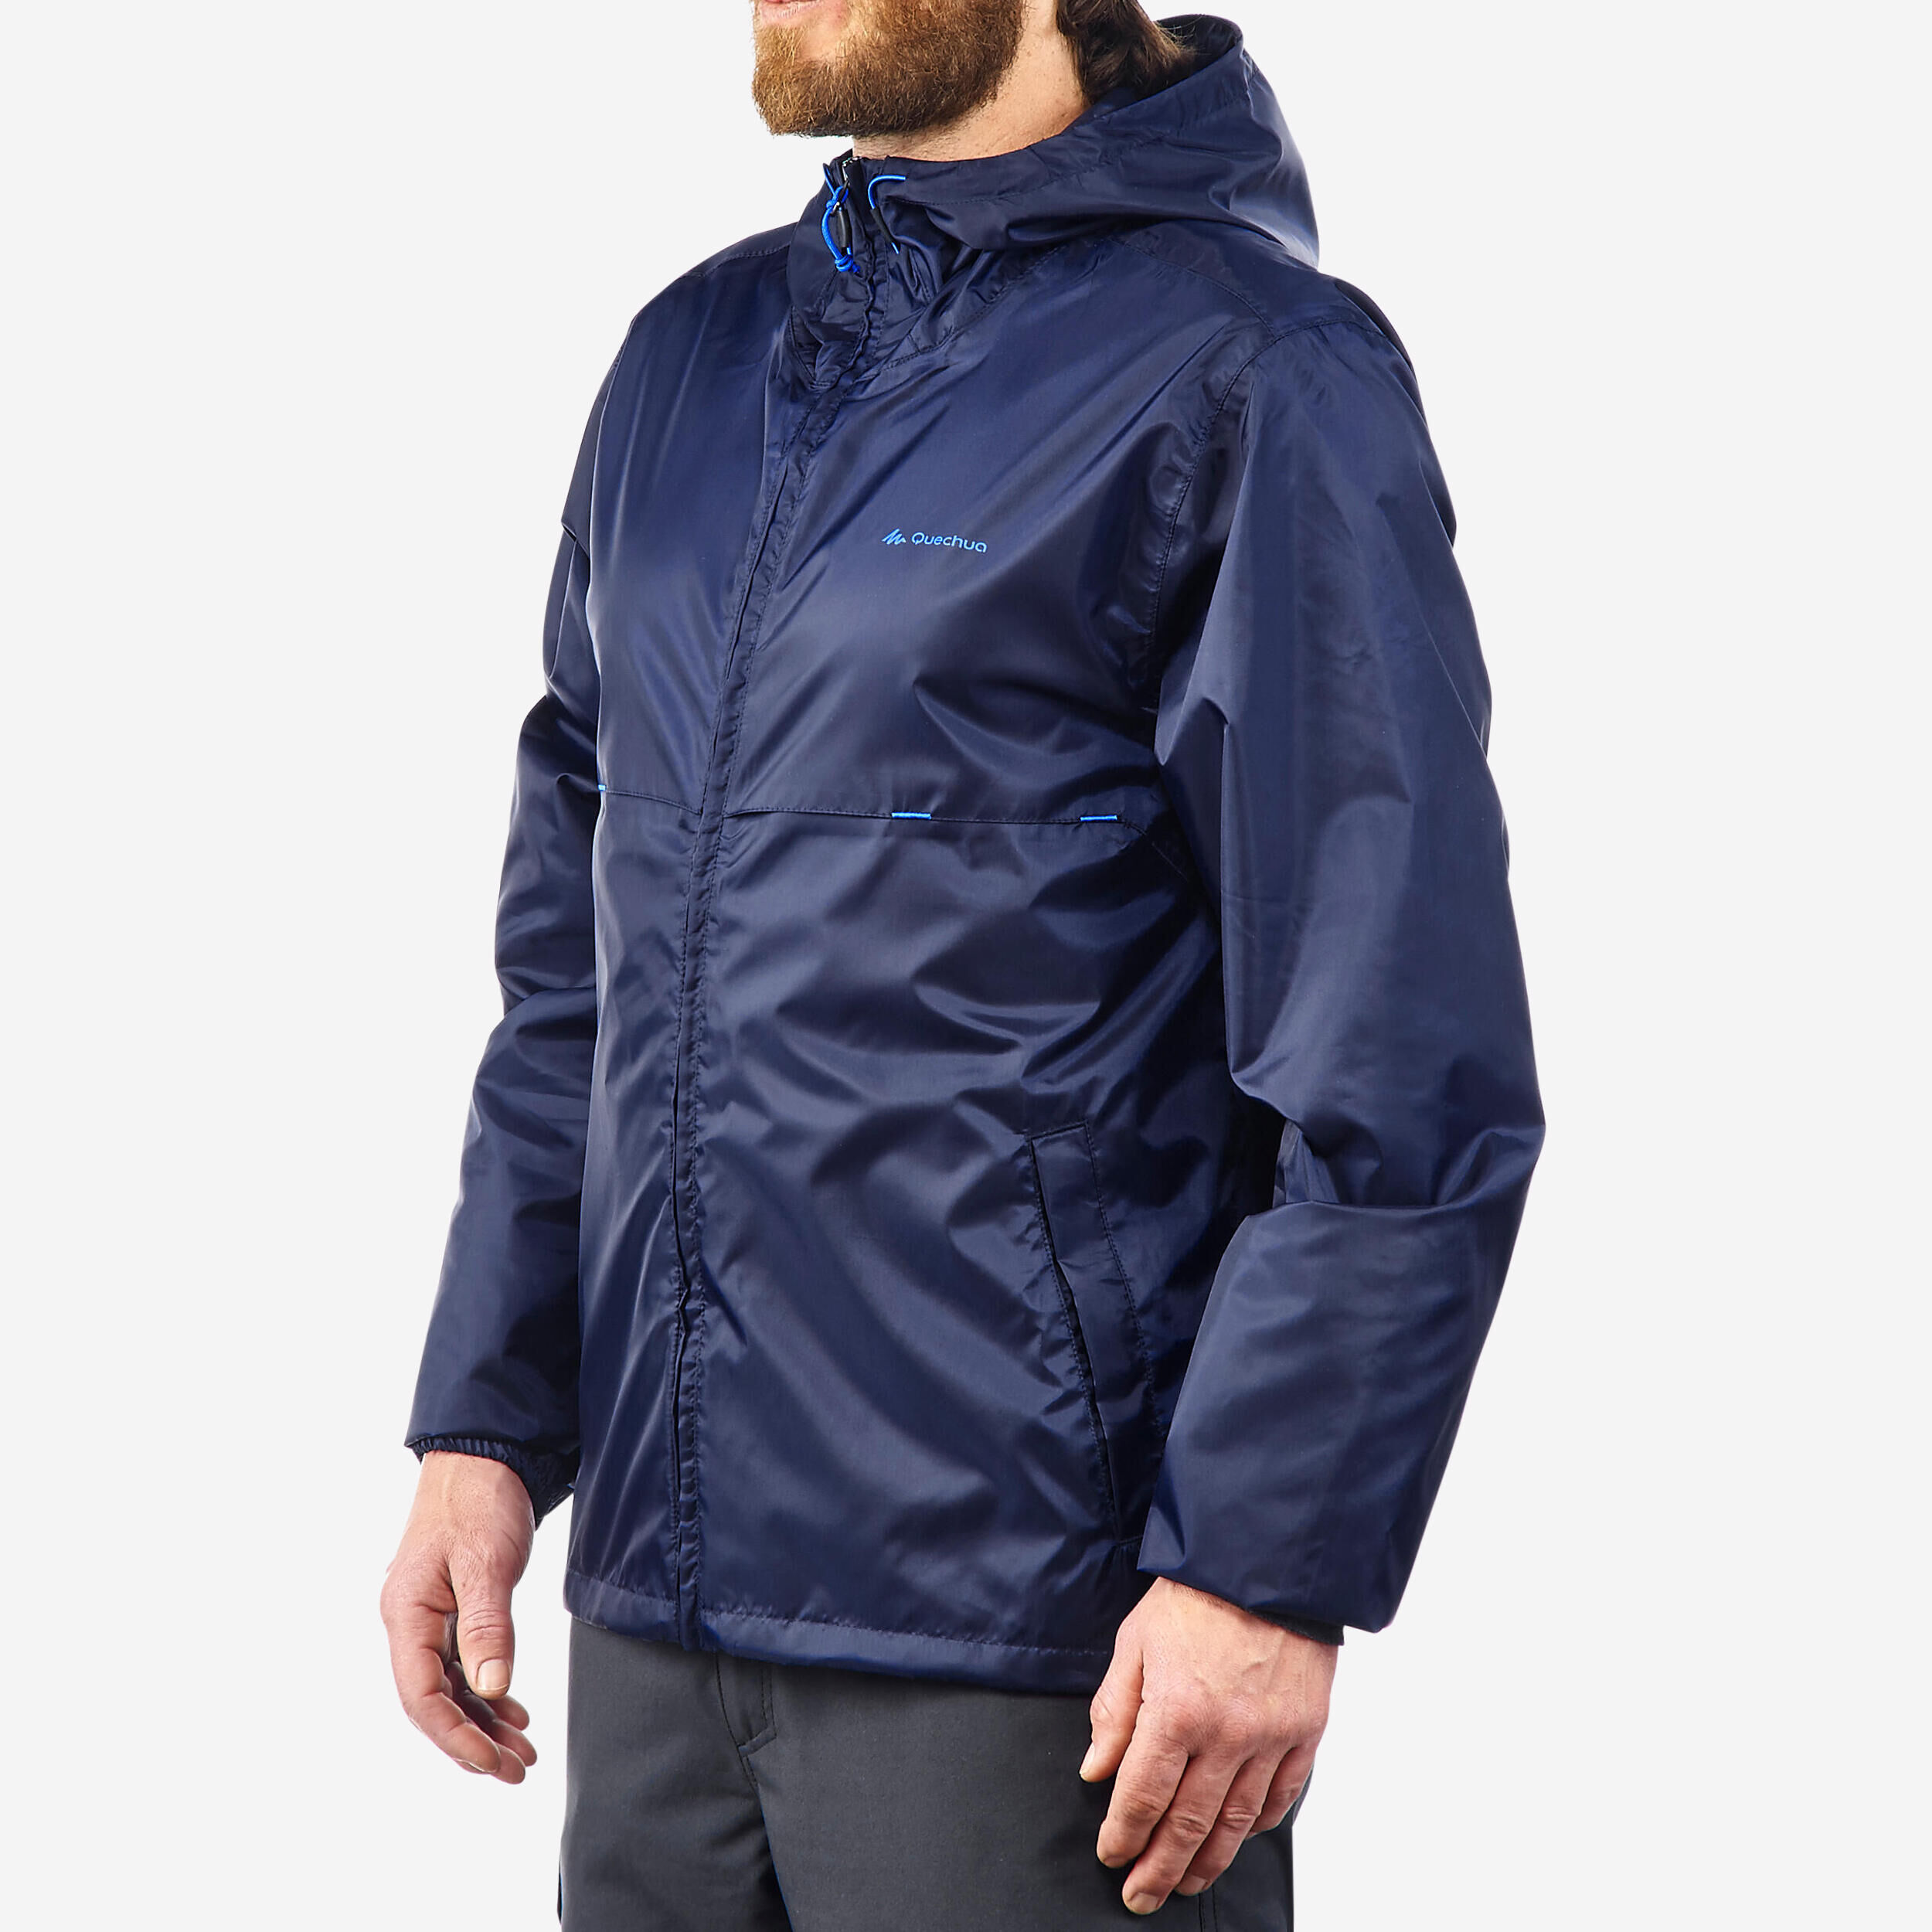 QUECHUA Men's Windproof and Water-repellent Hiking Jacket - Raincut Full Zip